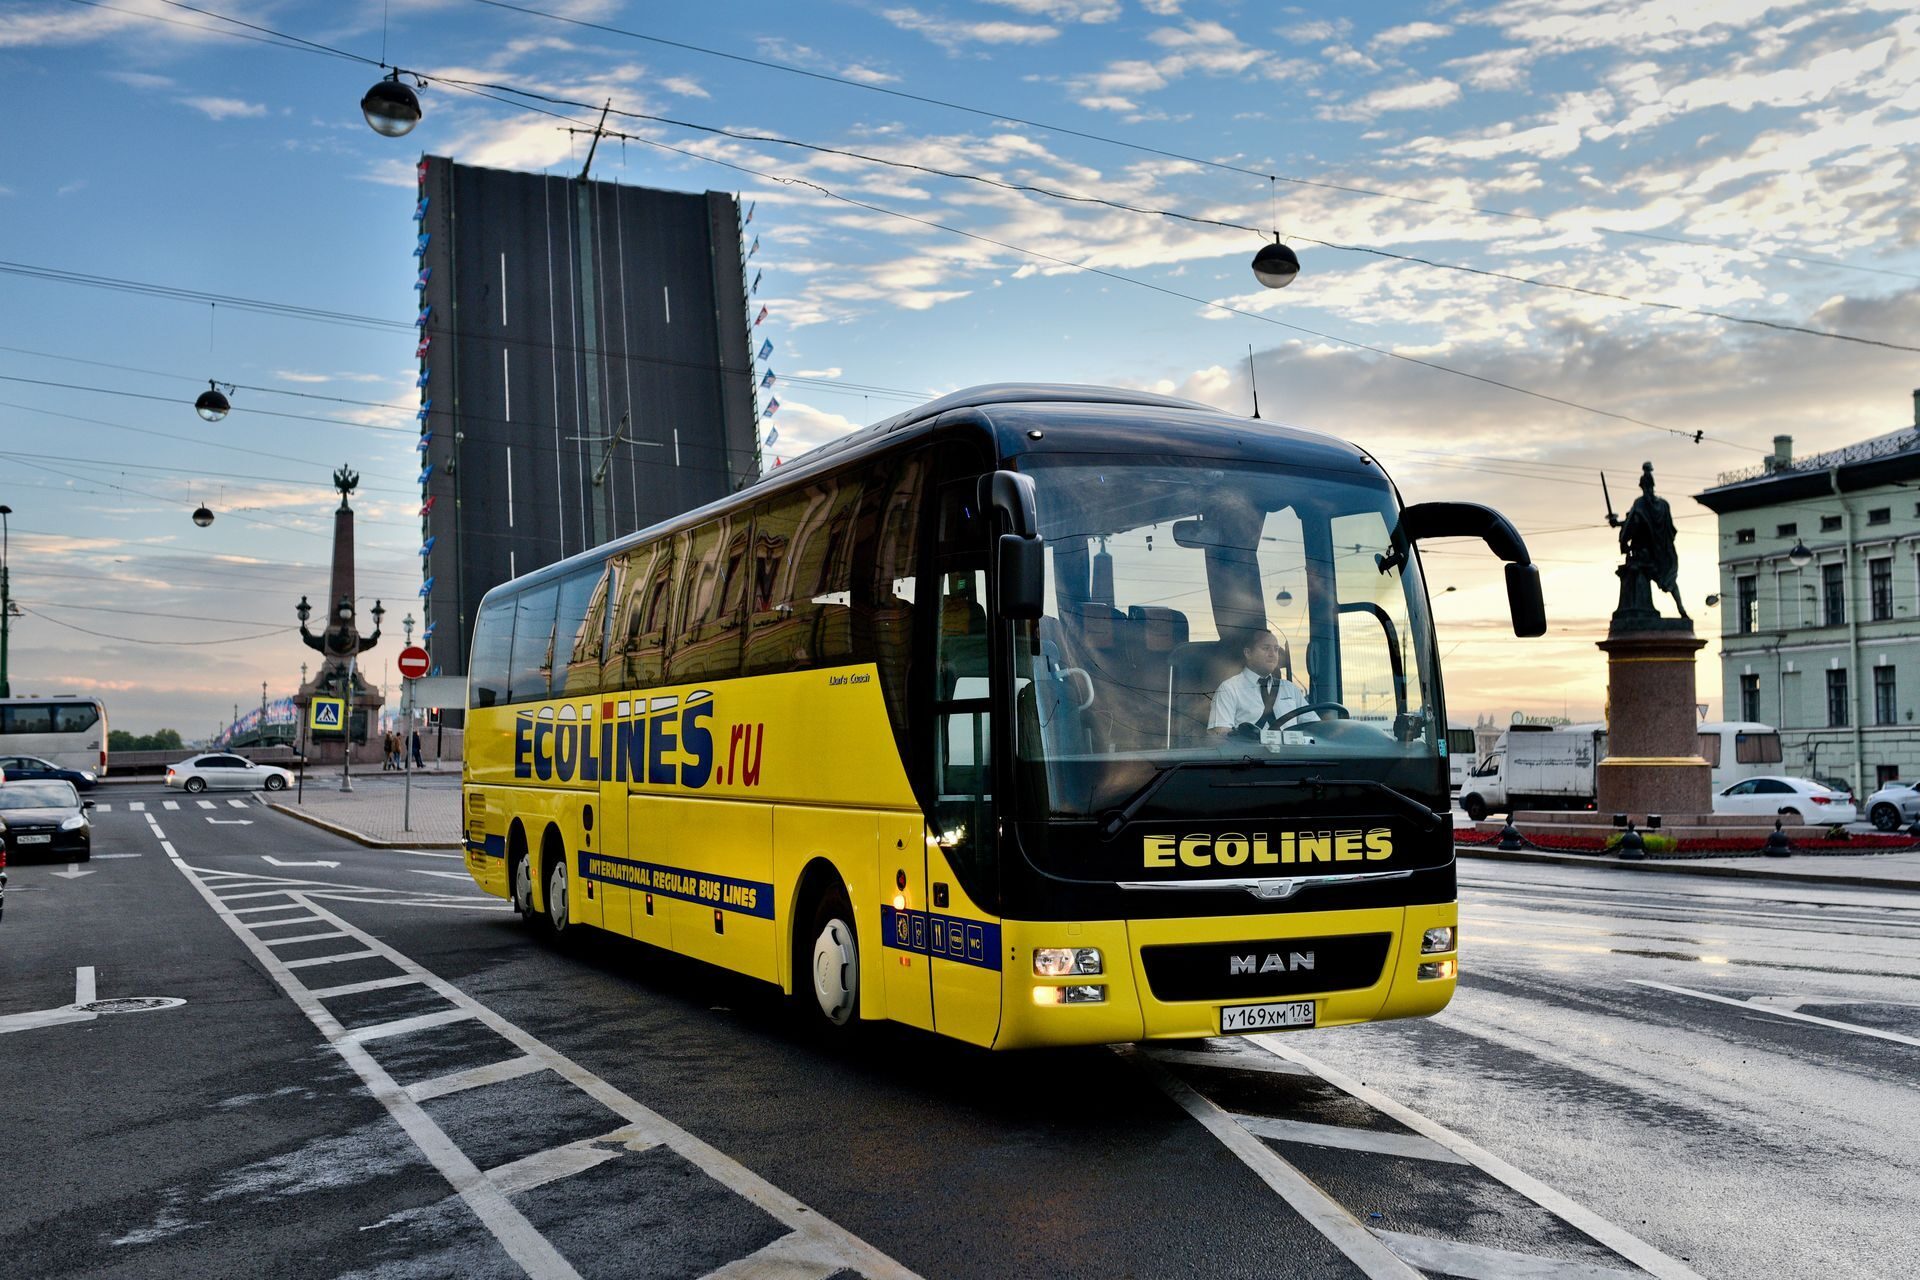 Ecolines - крупный оператор международных автобусных перевозок